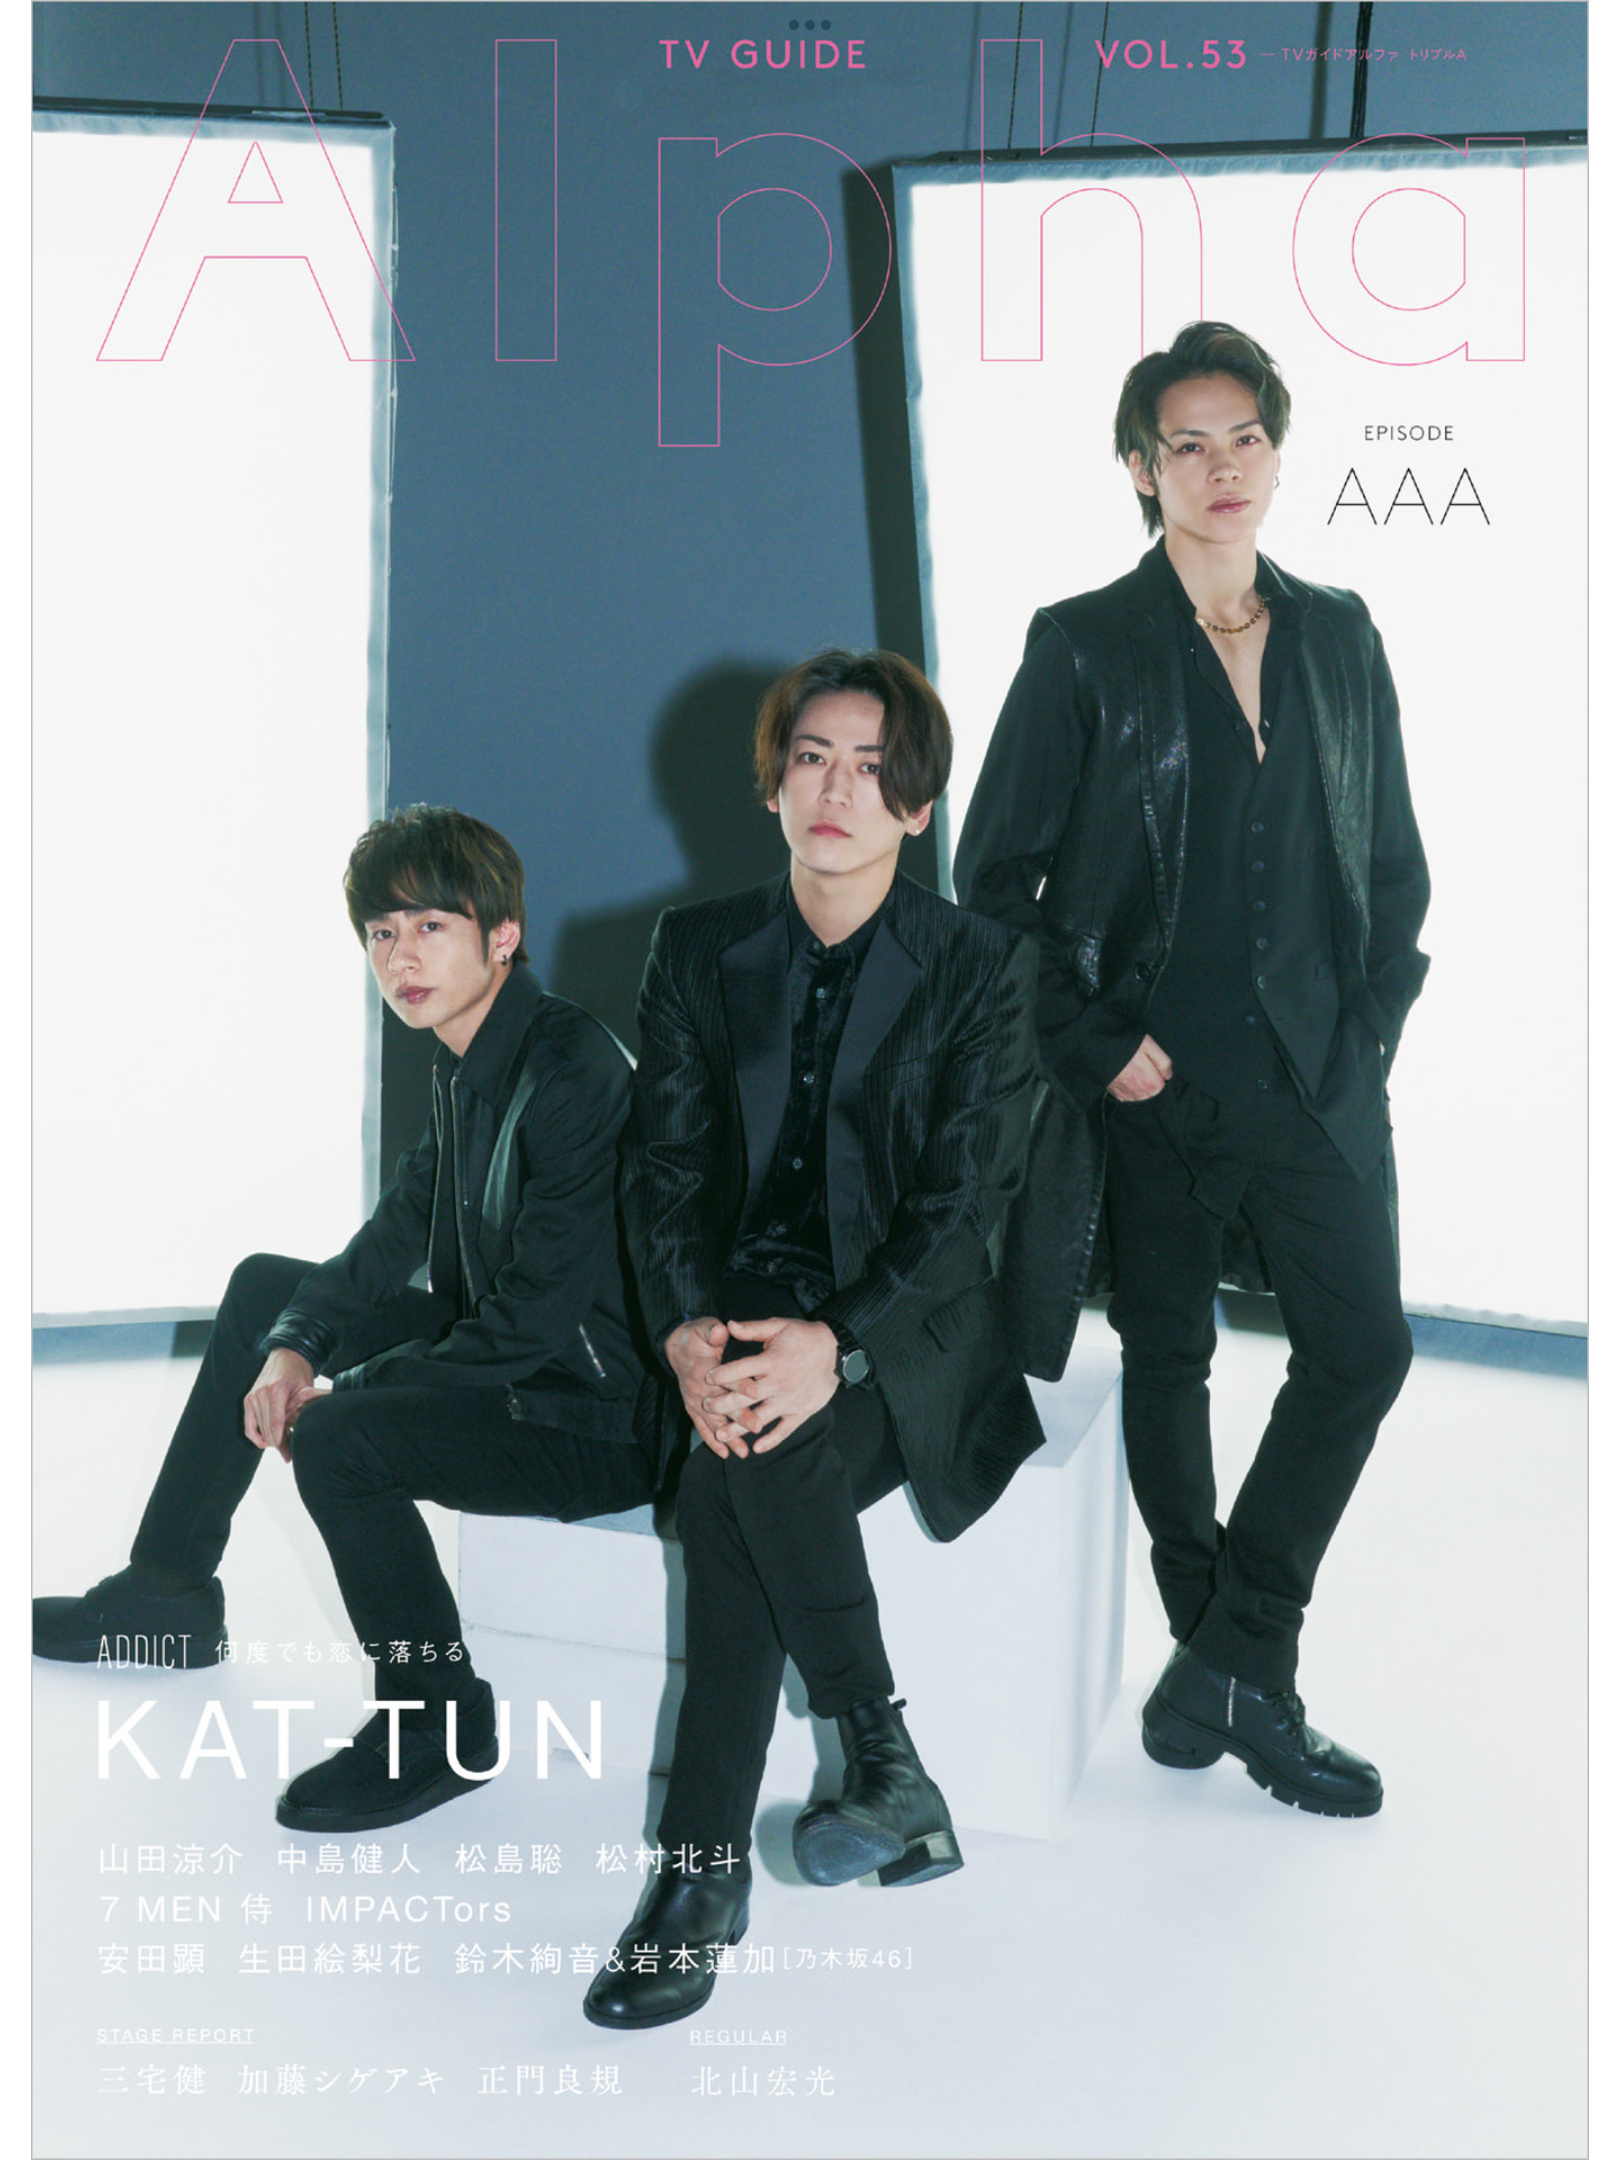 KAT-TUN TVガイドAlpha EPISODE AAA (TVガイドMOOK 107号) - itotii